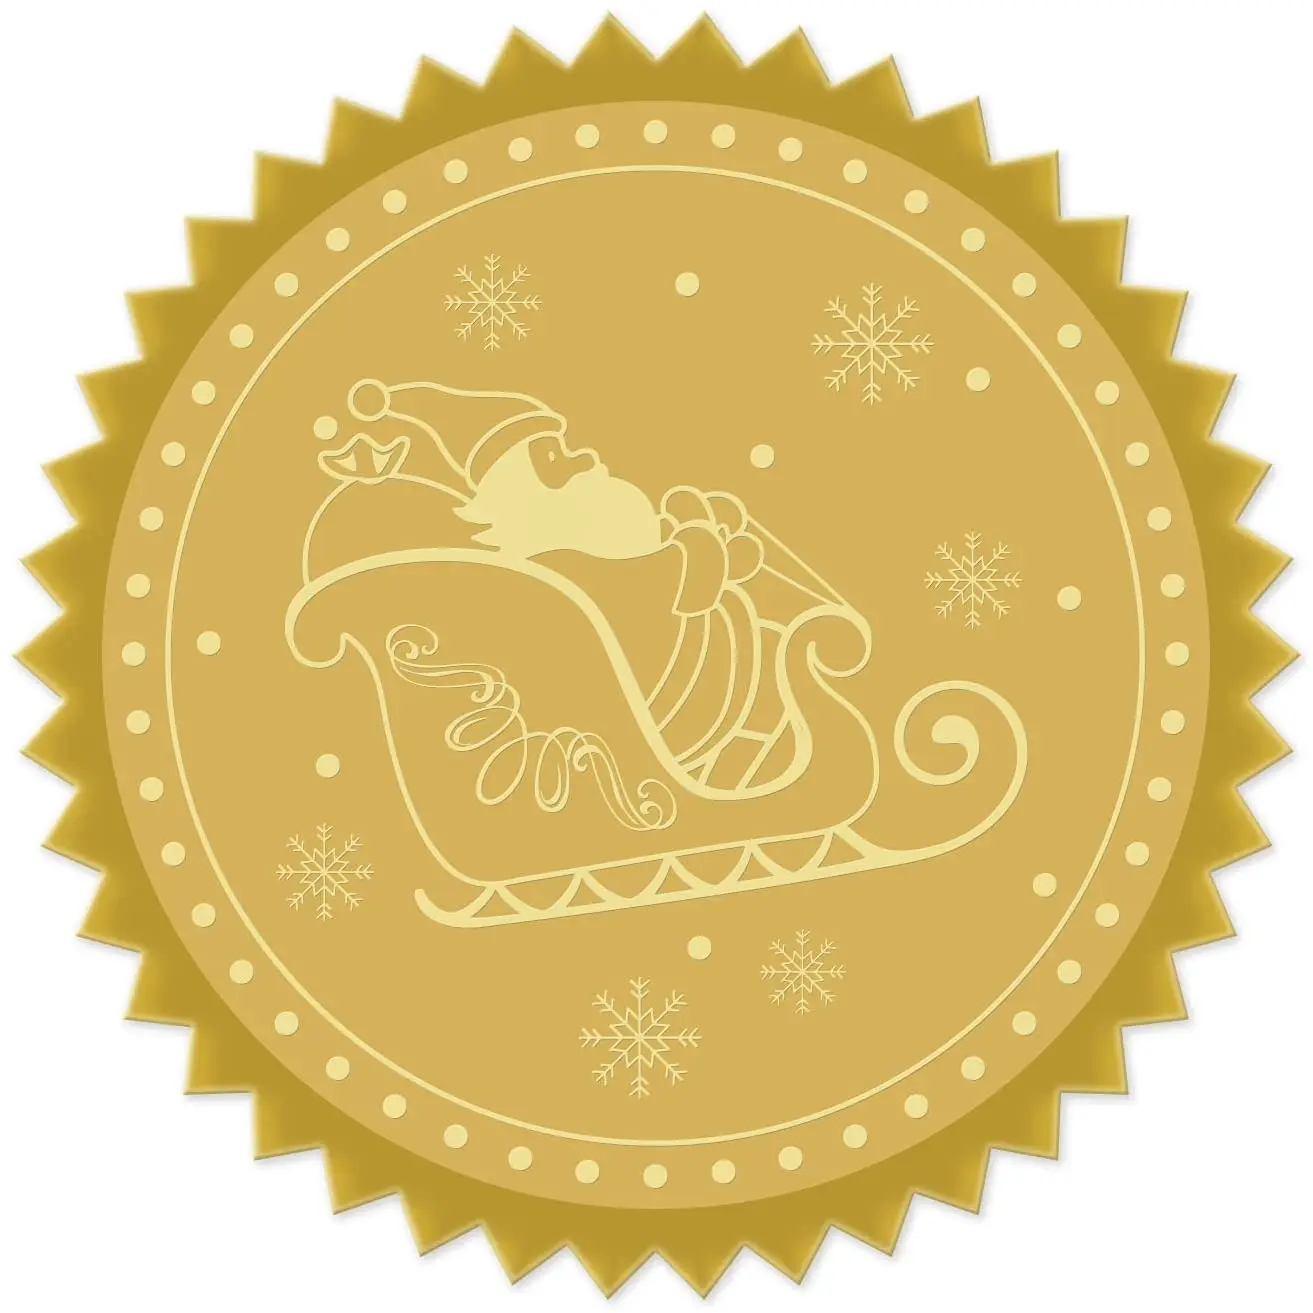 

100 шт. 50 мм золотые фольгированные сертификаты, самоклеящиеся тисненые наклейки Санта-Клаус, приглашения на Рождество, выпускной, нотариус